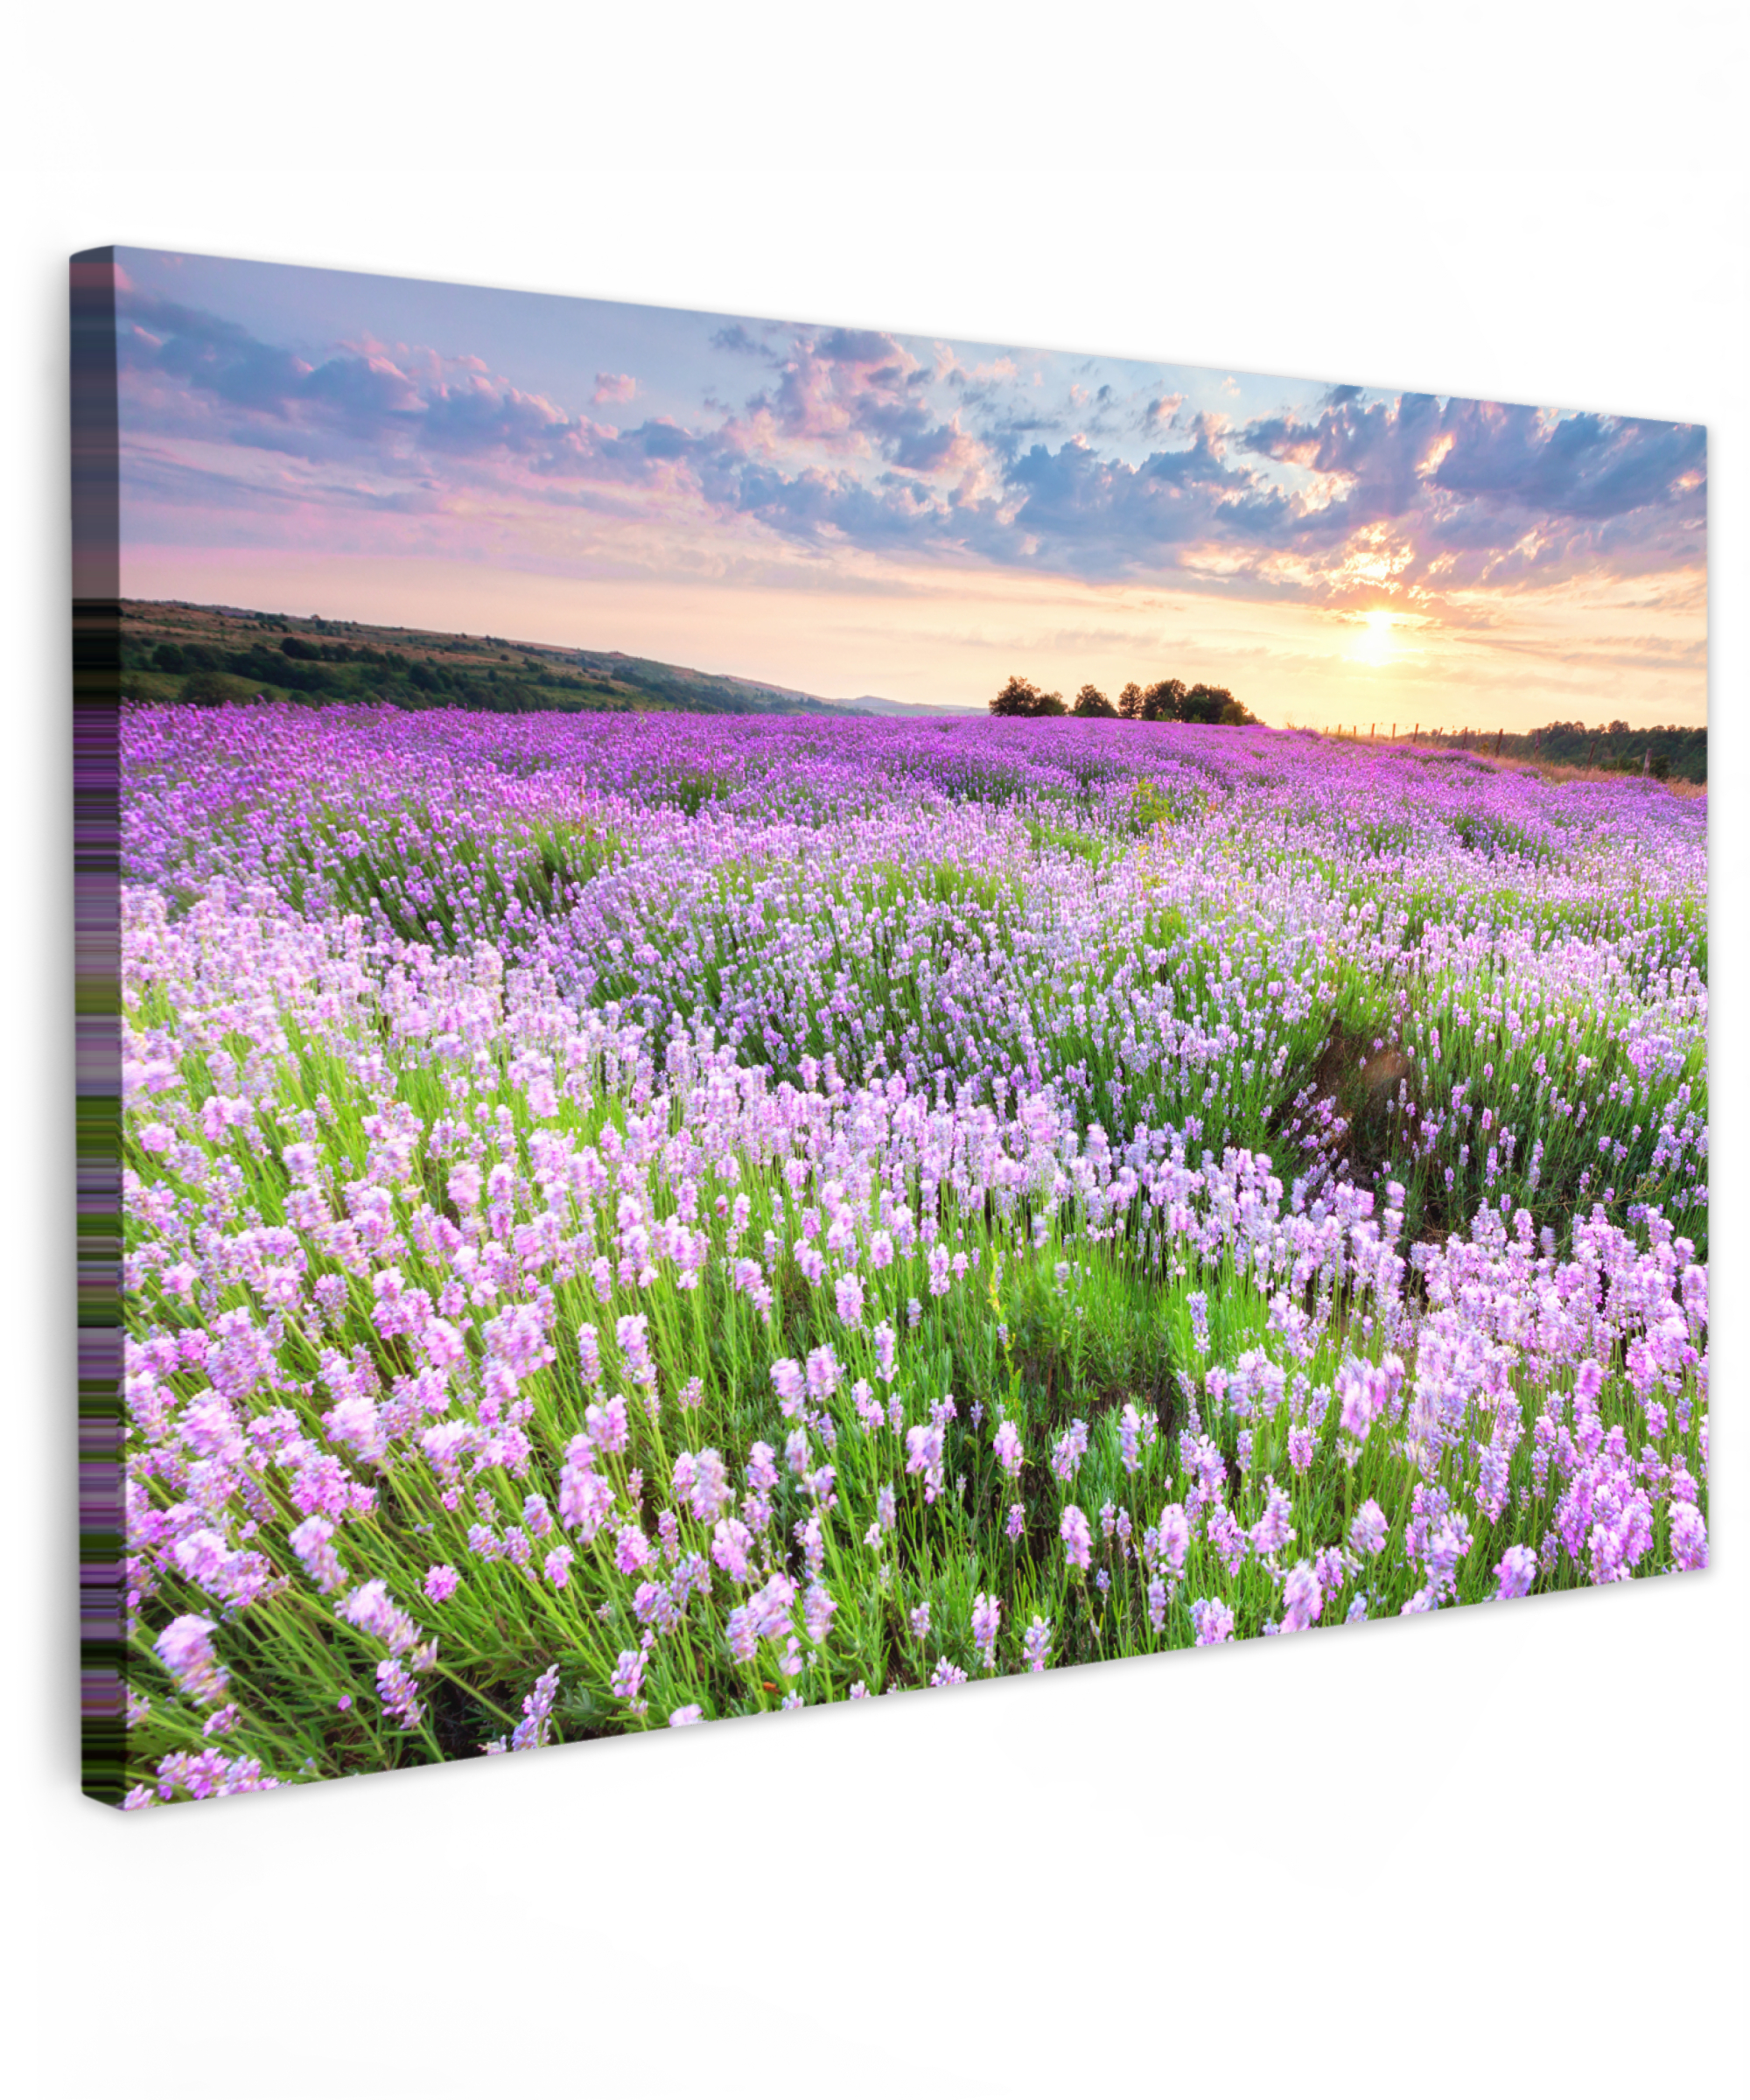 Tableau sur toile - Fleurs - Lavande - Violet - Ciel - Coucher de soleil - Prairie - Nature